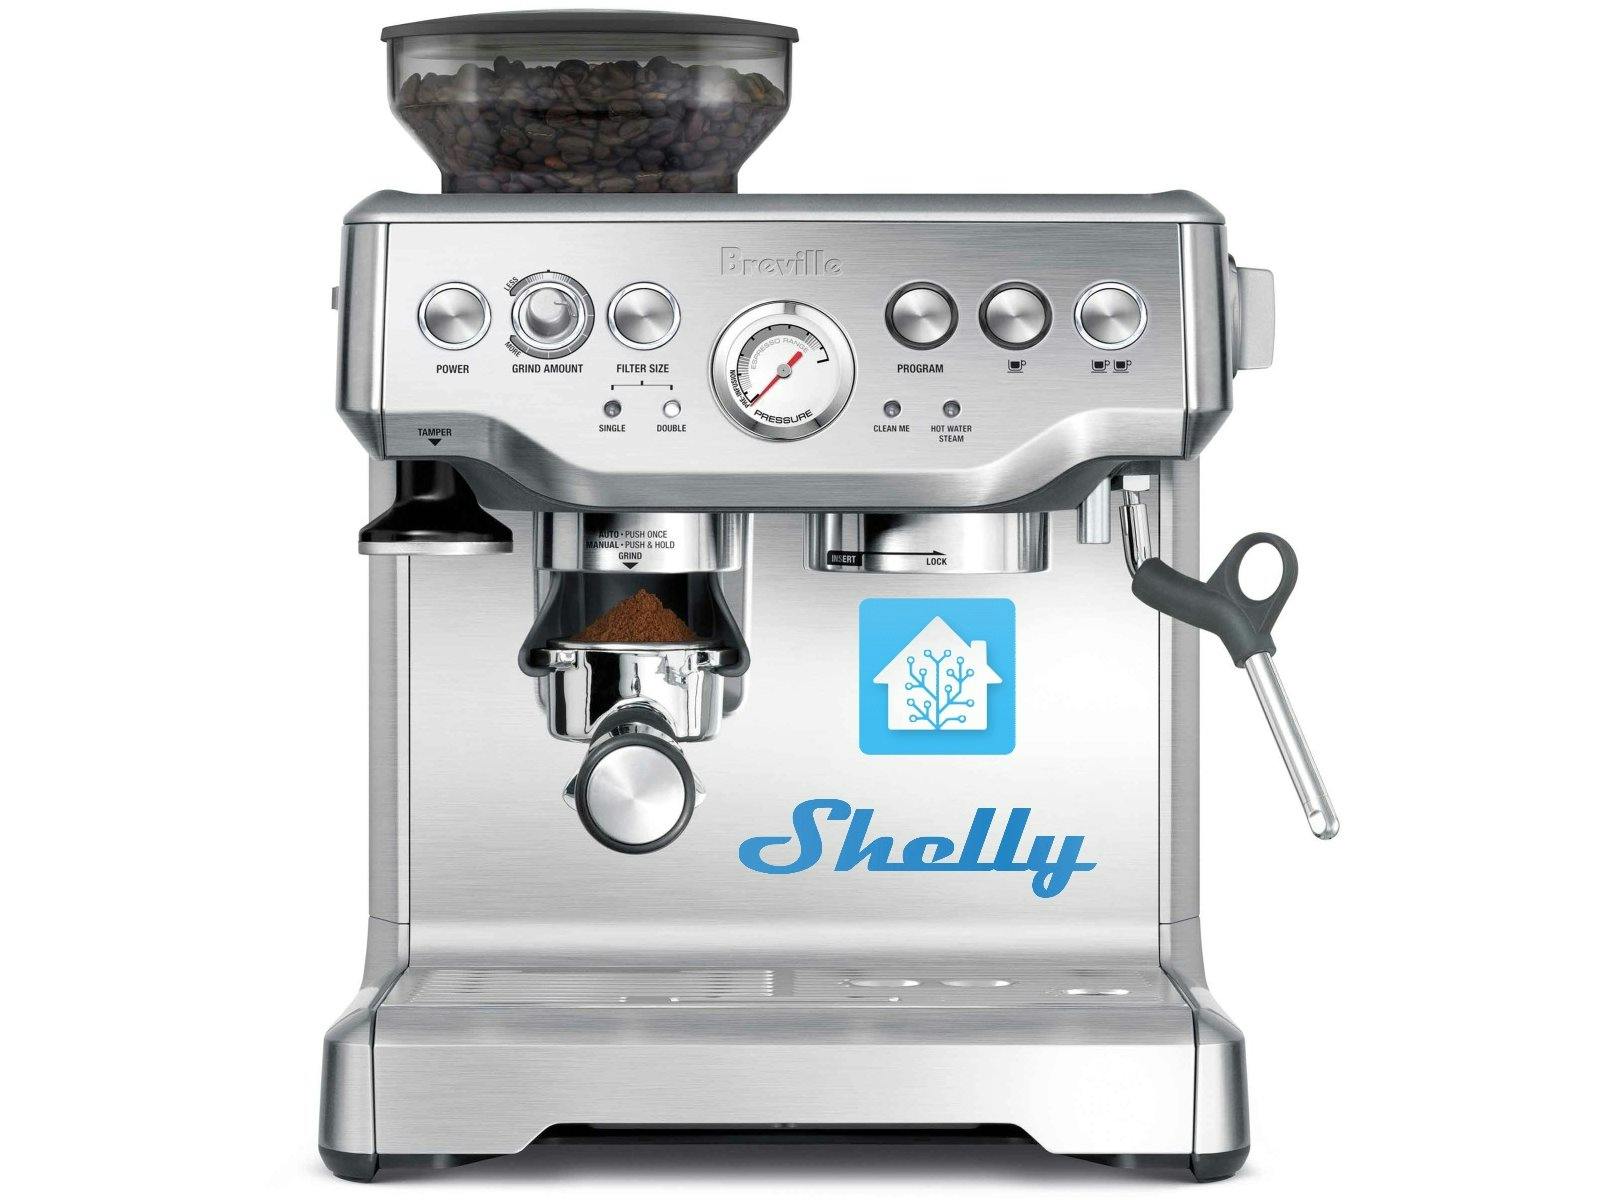 Hack a Breville Espresso Machine for Assistant Control - Hackster.io